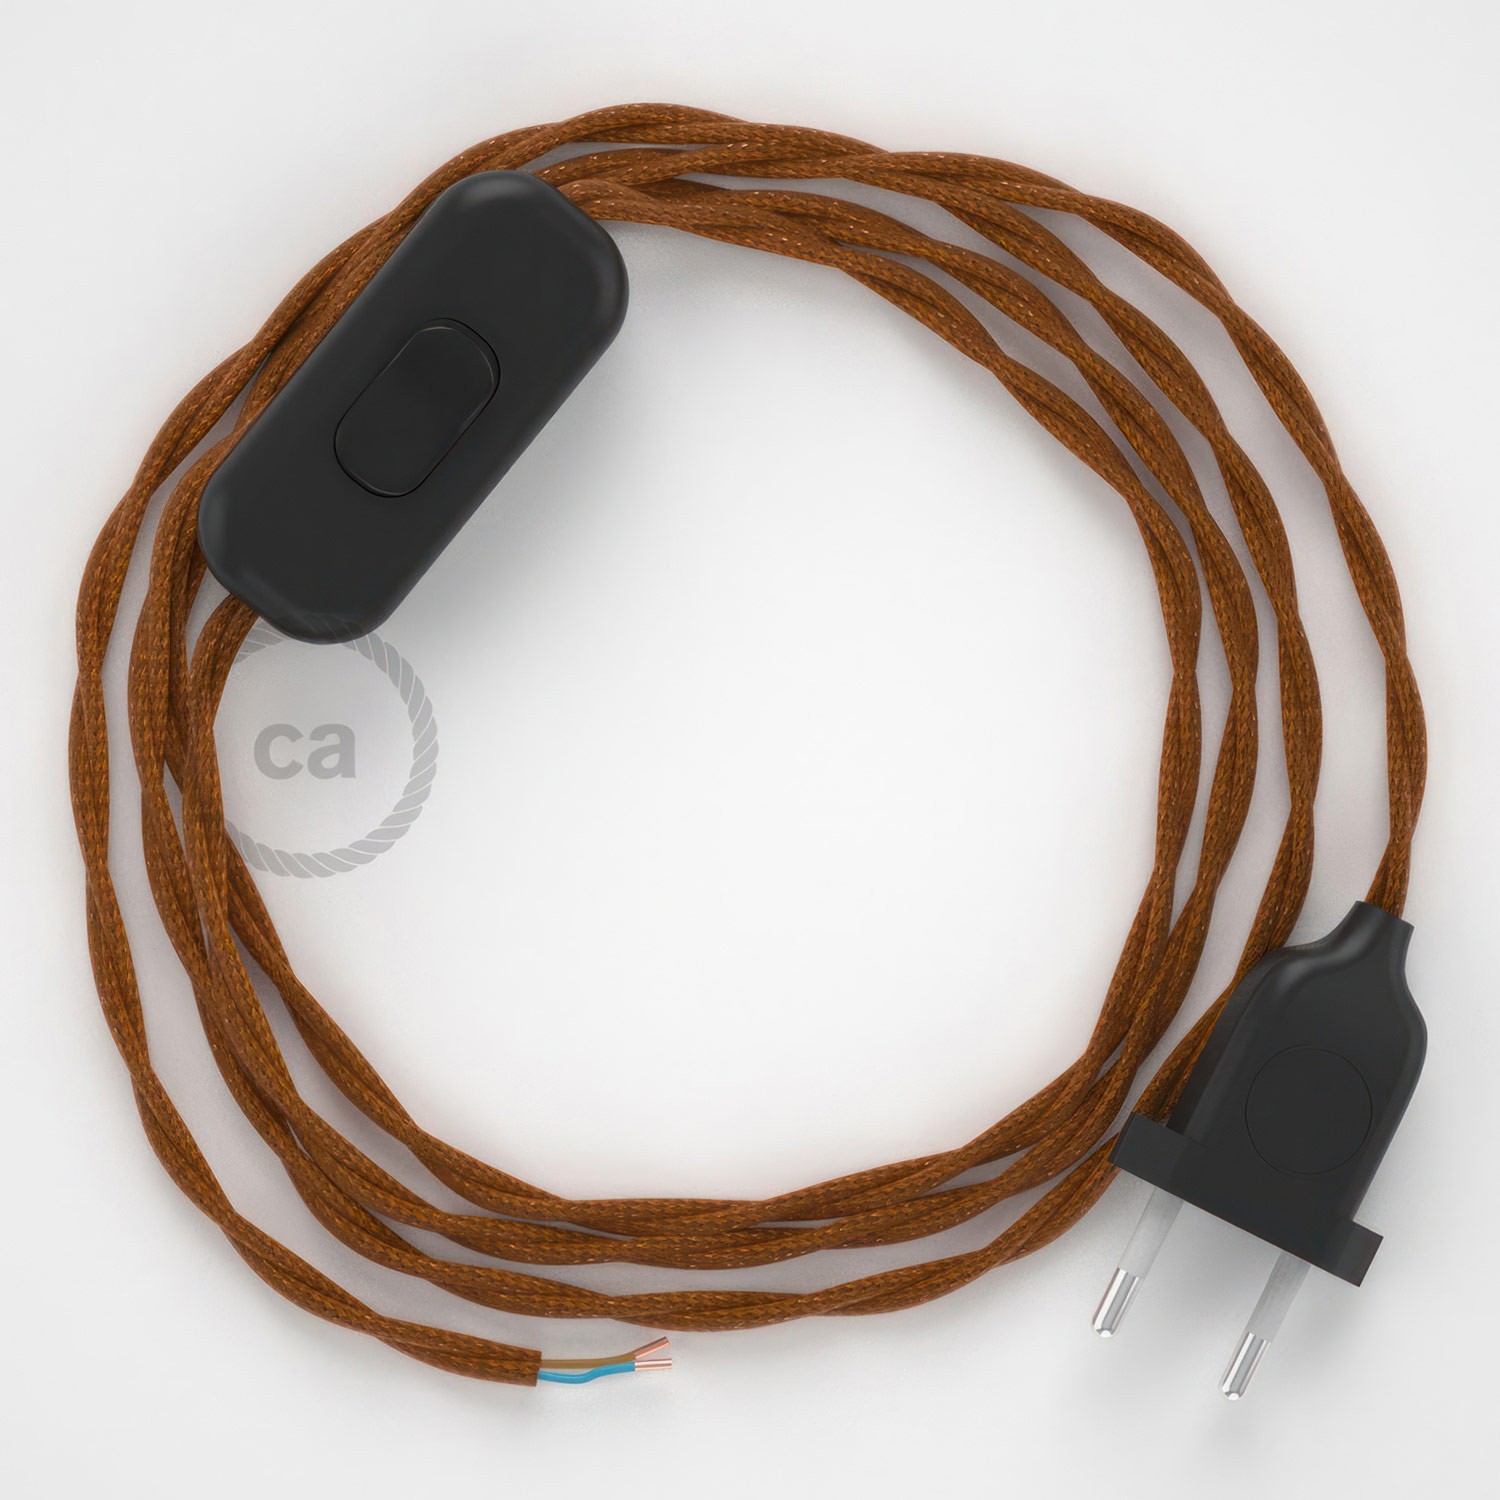 Cableado para lámpara, cable TM22 Efecto Seda Whisky 1,8m. Elige tu el color de la clavija y del interruptor!